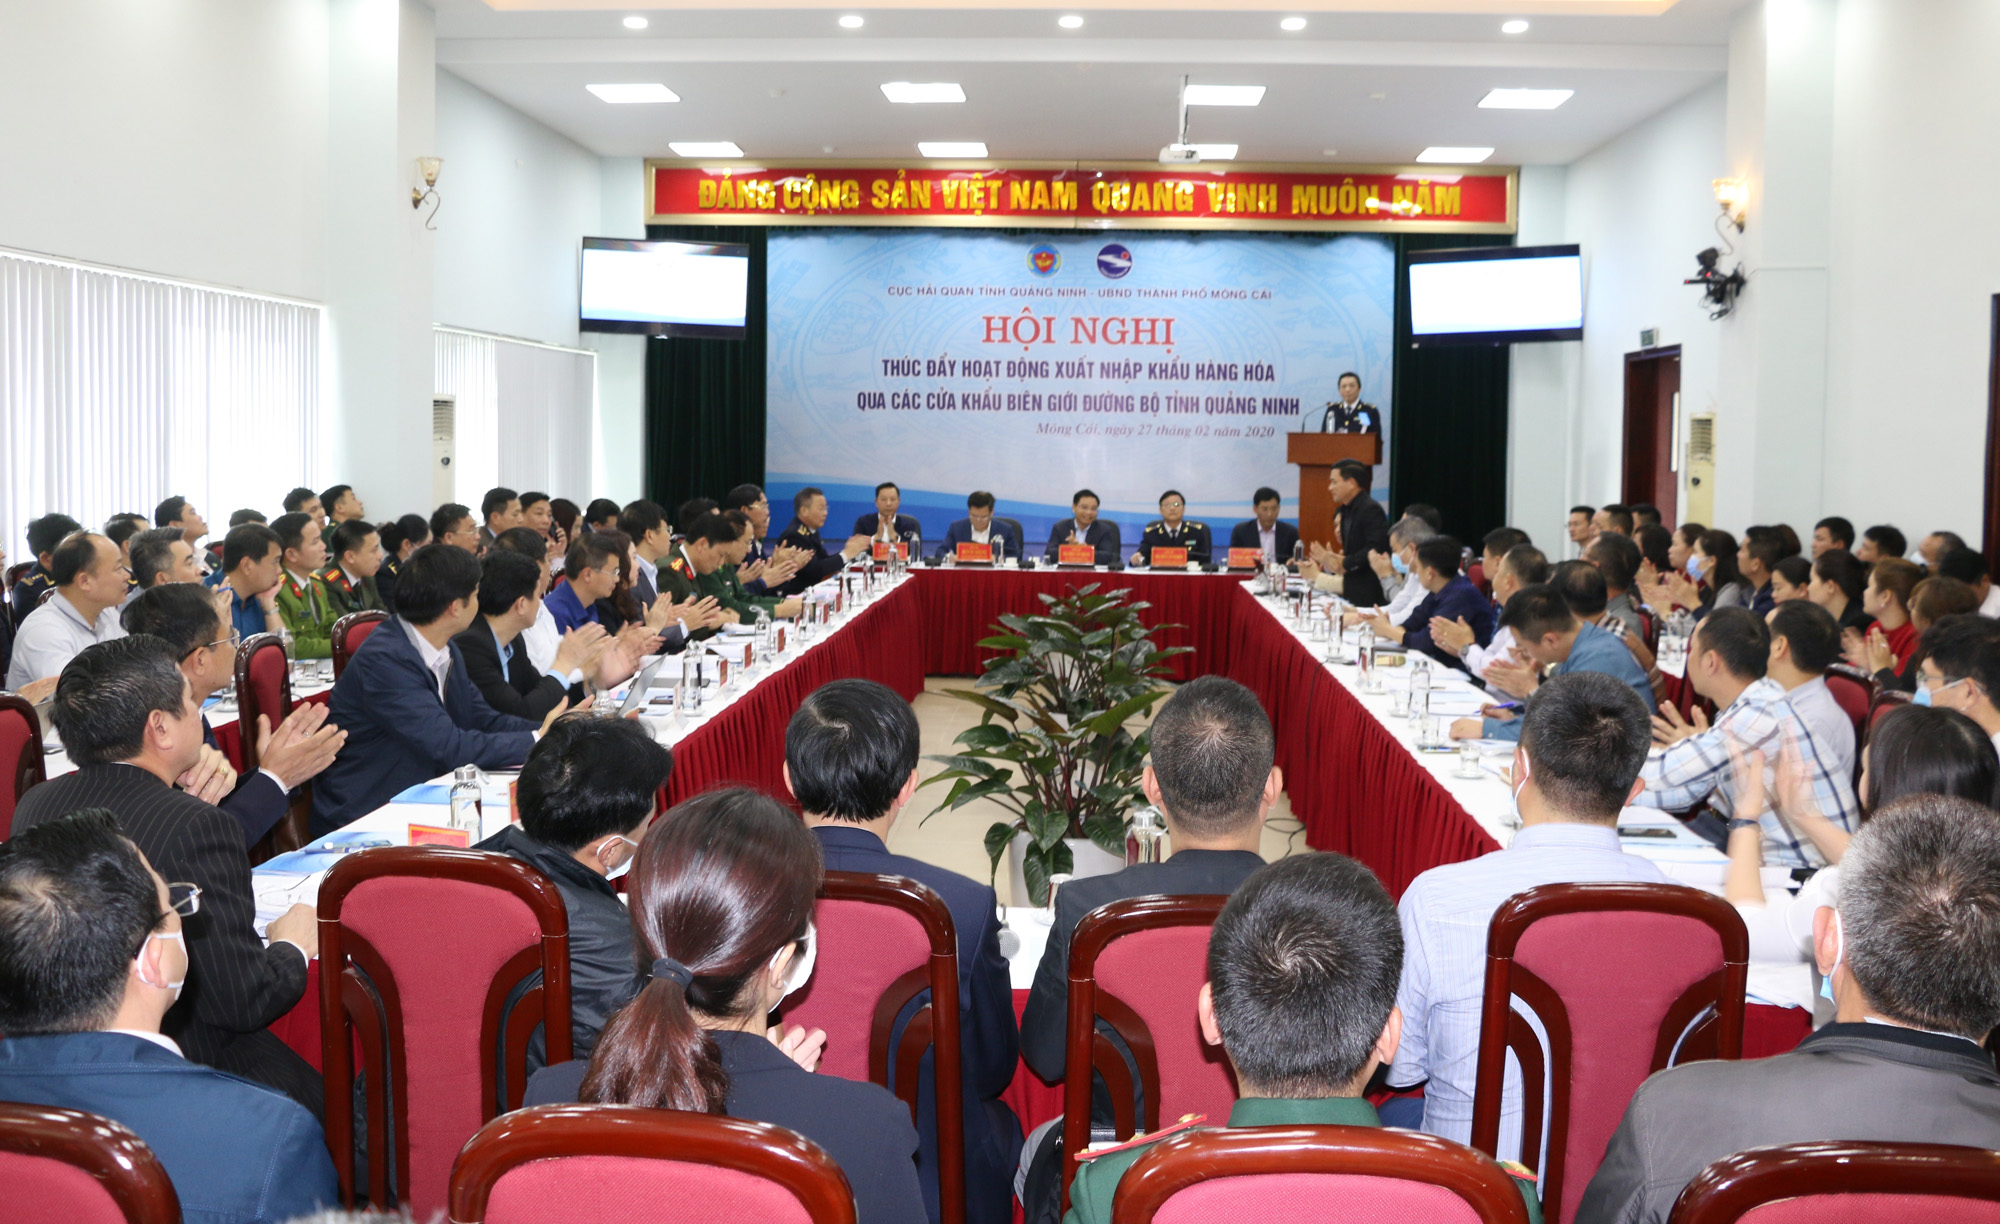 Cục Hải quan Quảng Ninh phối hợp với UBND TP Móng Cái đã tổ chức hội nghị thúc đẩy hoạt động xuất nhập khẩu (XNK) hàng hóa qua các cửa khẩu biên giới đường bộ tỉnh Quảng Ninh